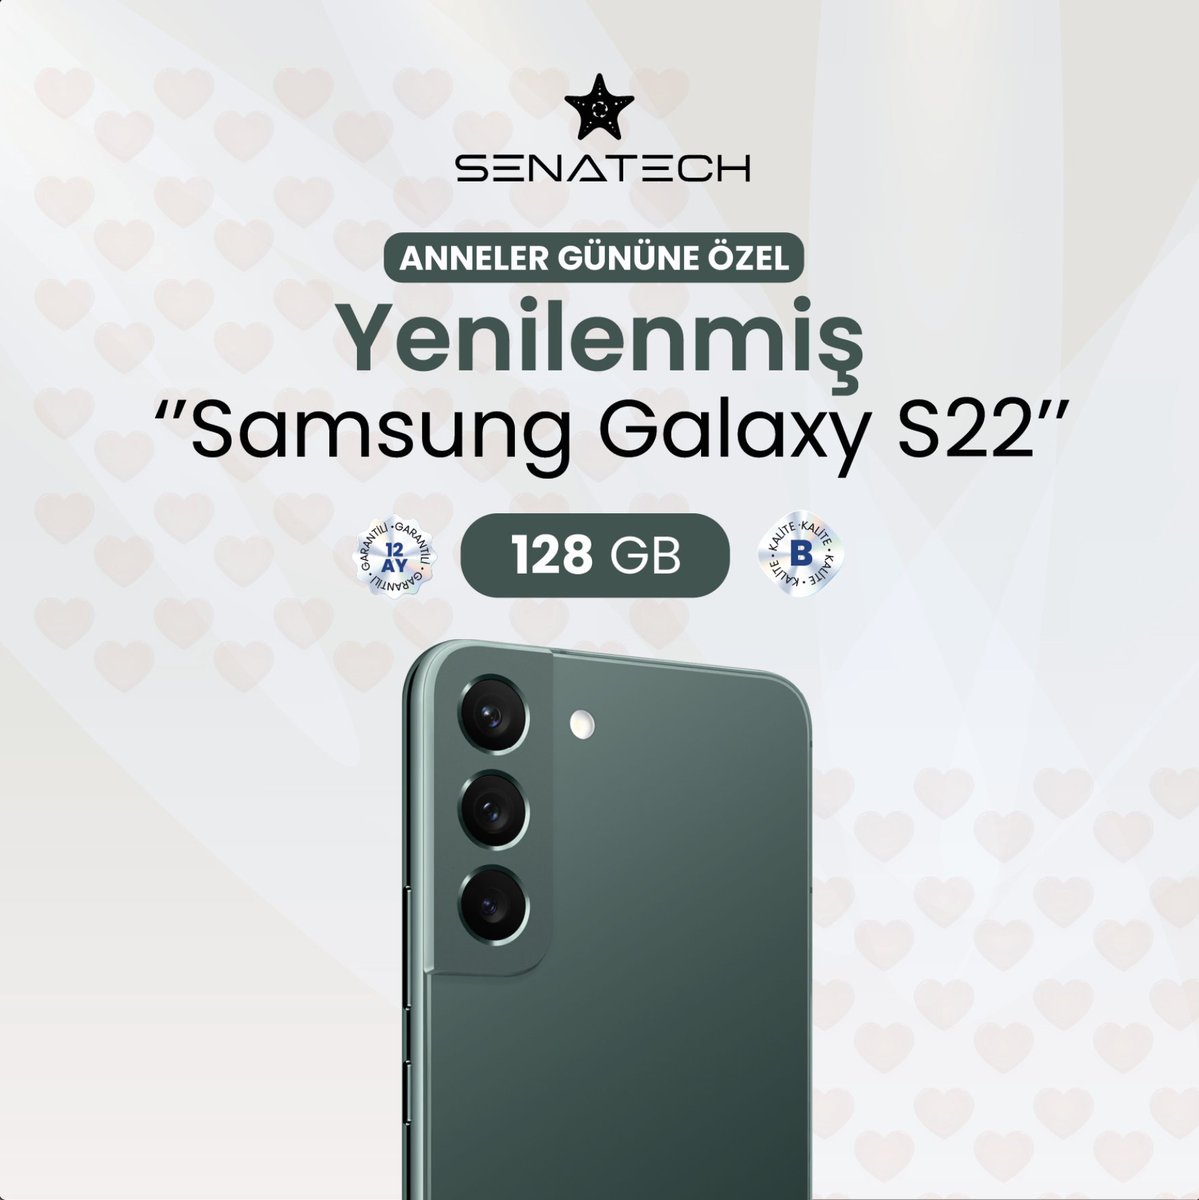 ❤️ Anneler Günü'nü Samsung Galaxy S22 ile kutlayın! 🎁 Şimdi Senatech'te özel Anneler Günü indirimleriyle Samsung Galaxy S22'yi yakalayın. 📱 Annenize teknoloji ve şıklık sunarak ona unutulmaz bir hediye verin! #AnnelerGünü #SamsungGalaxyS22 #HediyeFikirleri #Teknoloji #Senatech